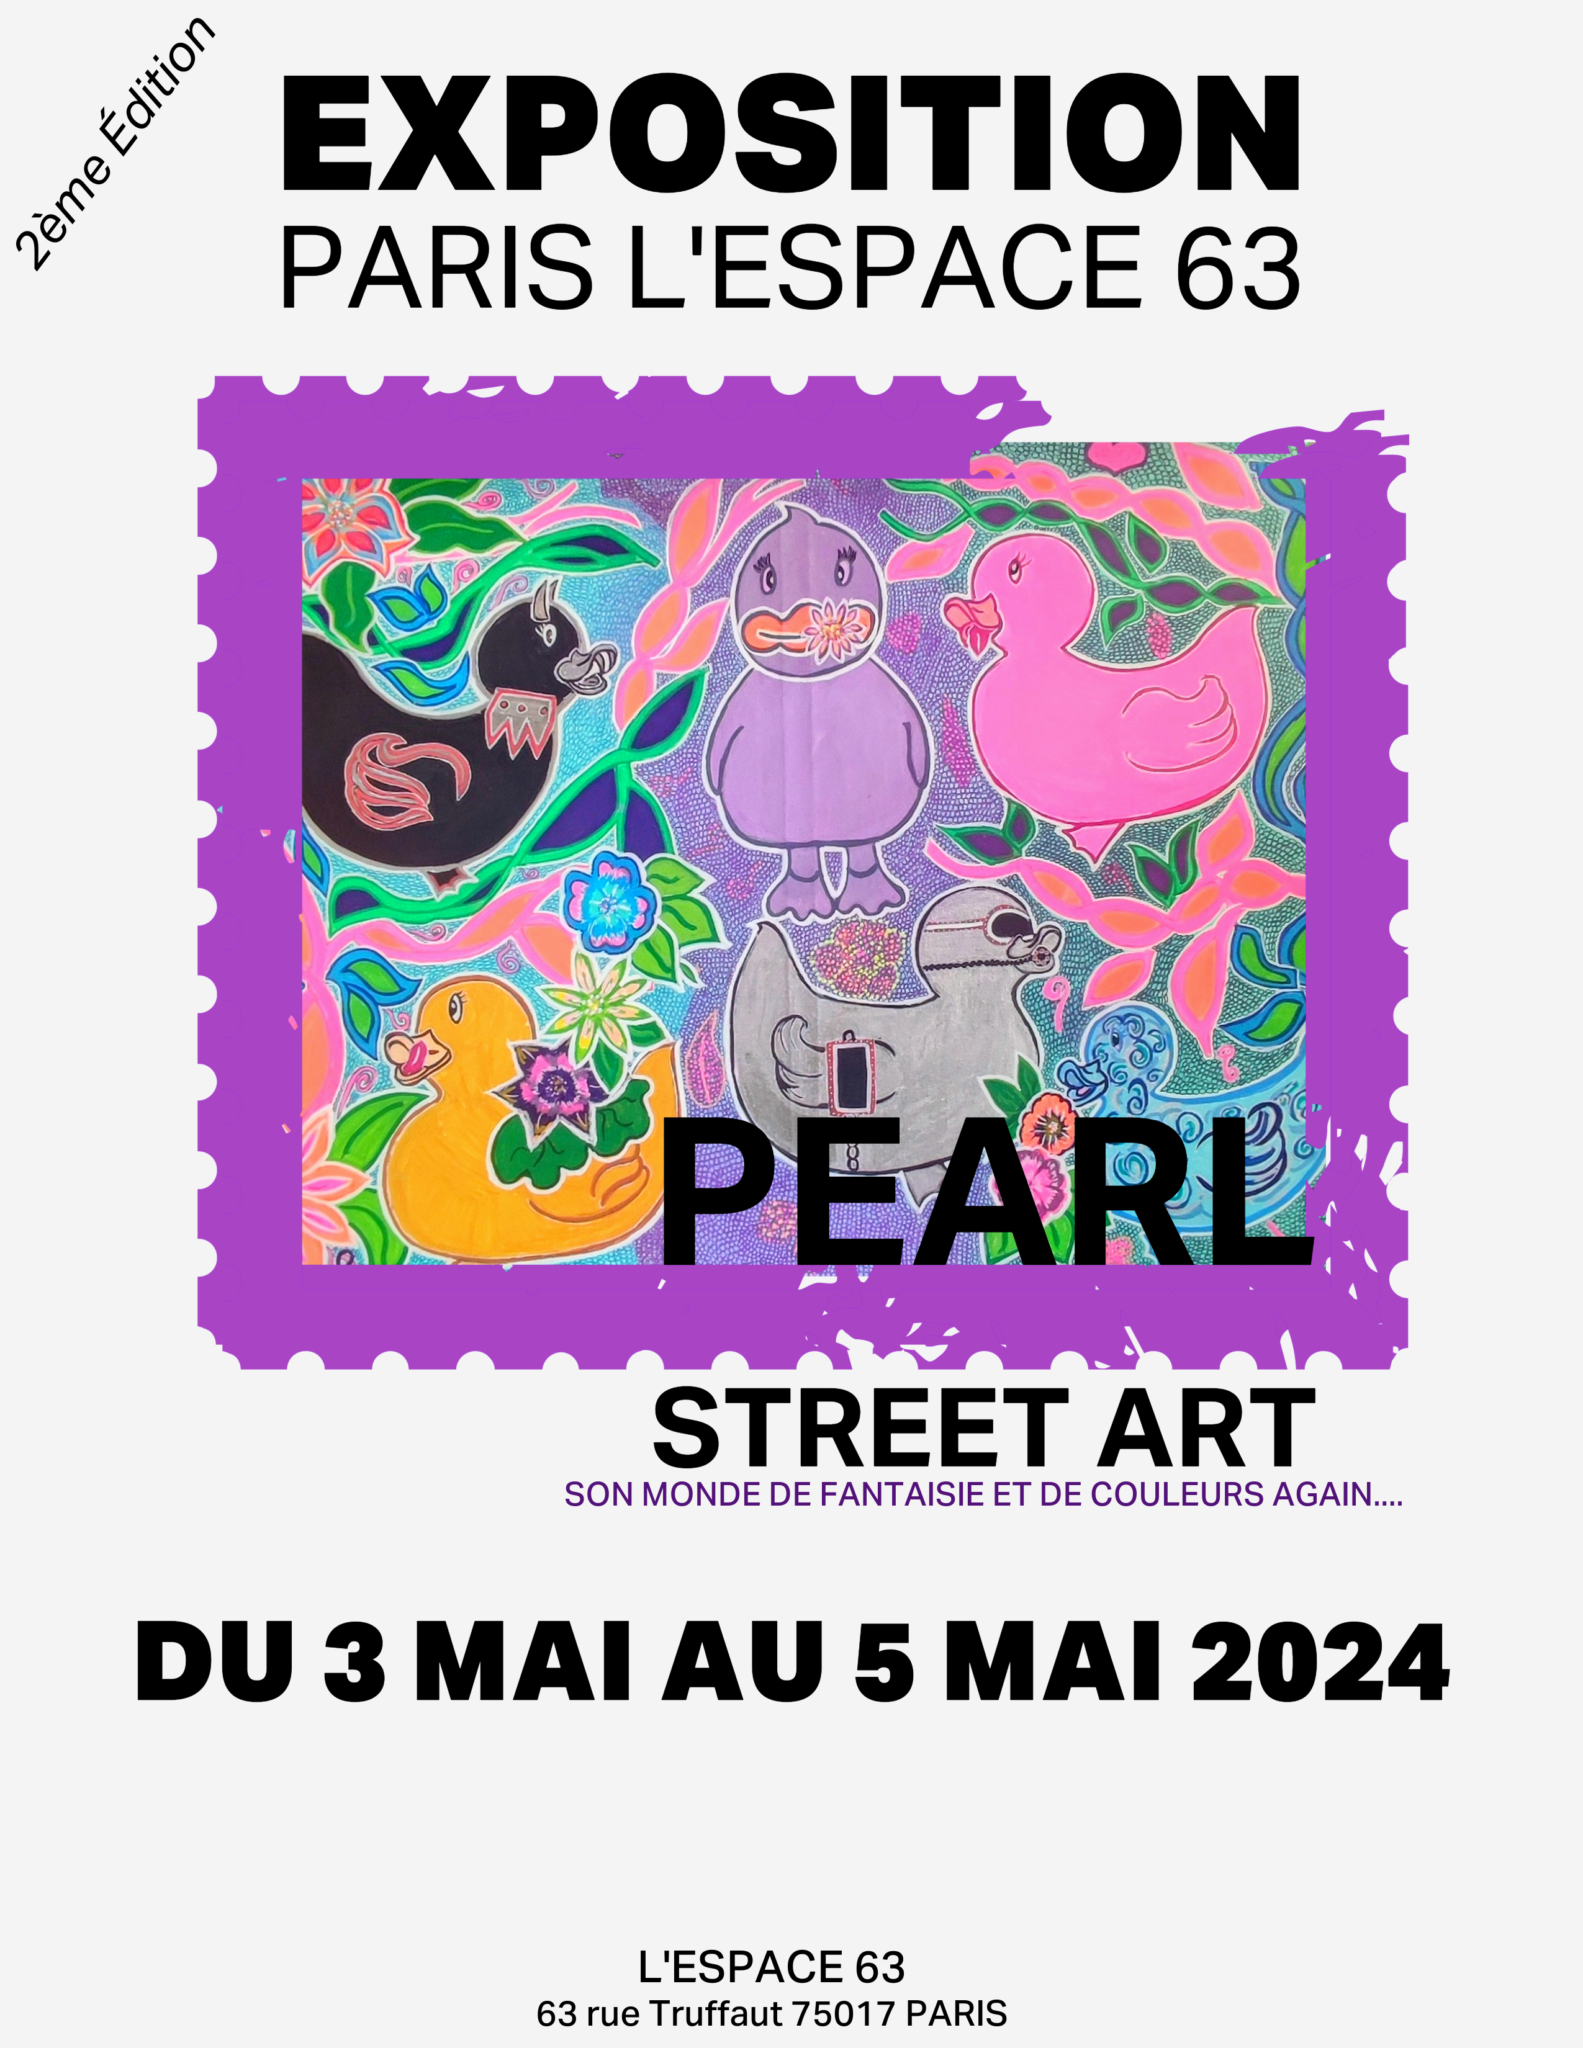 PEARL STREET ART Son monde de fantaisie et de couleurs again...